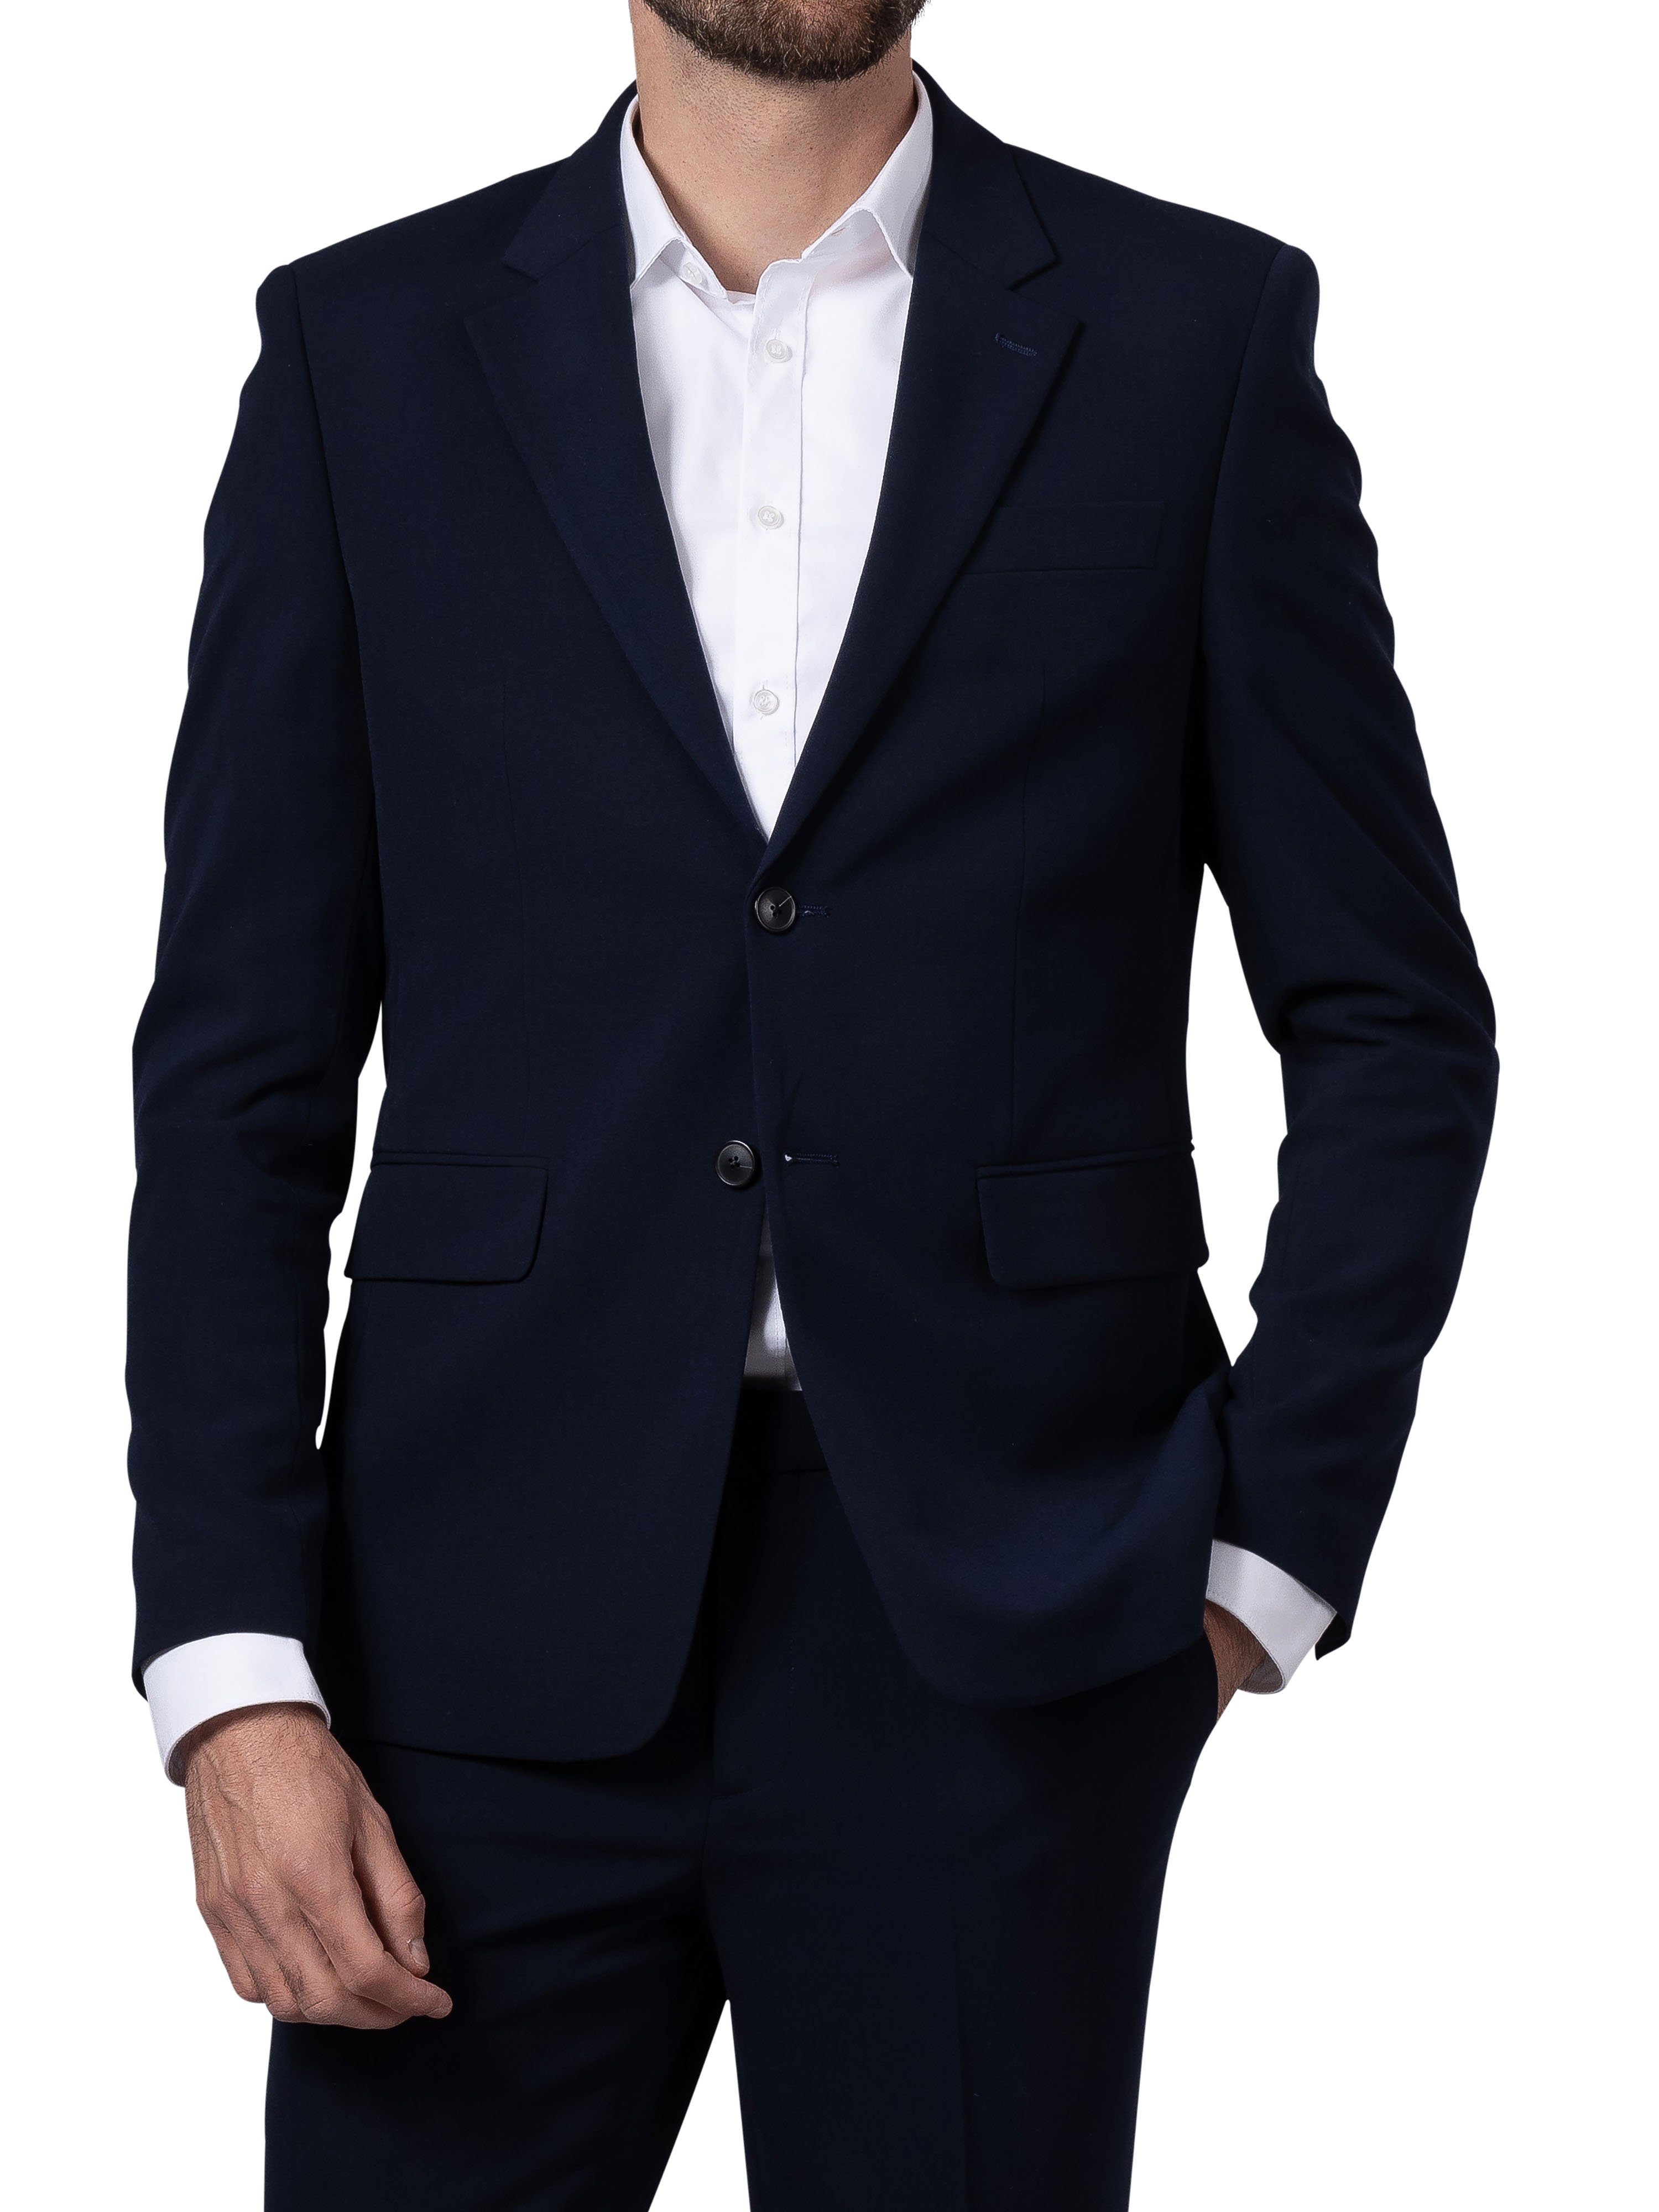 Hirschthal Anzugsakko Herren 2-Knopf Sakko oder Business Anzug mit Anzughose, Regular-Fit (Sakko und Hose in verschiedenen Größen kombinierbar) in klassischem Design, mit Kleidersack